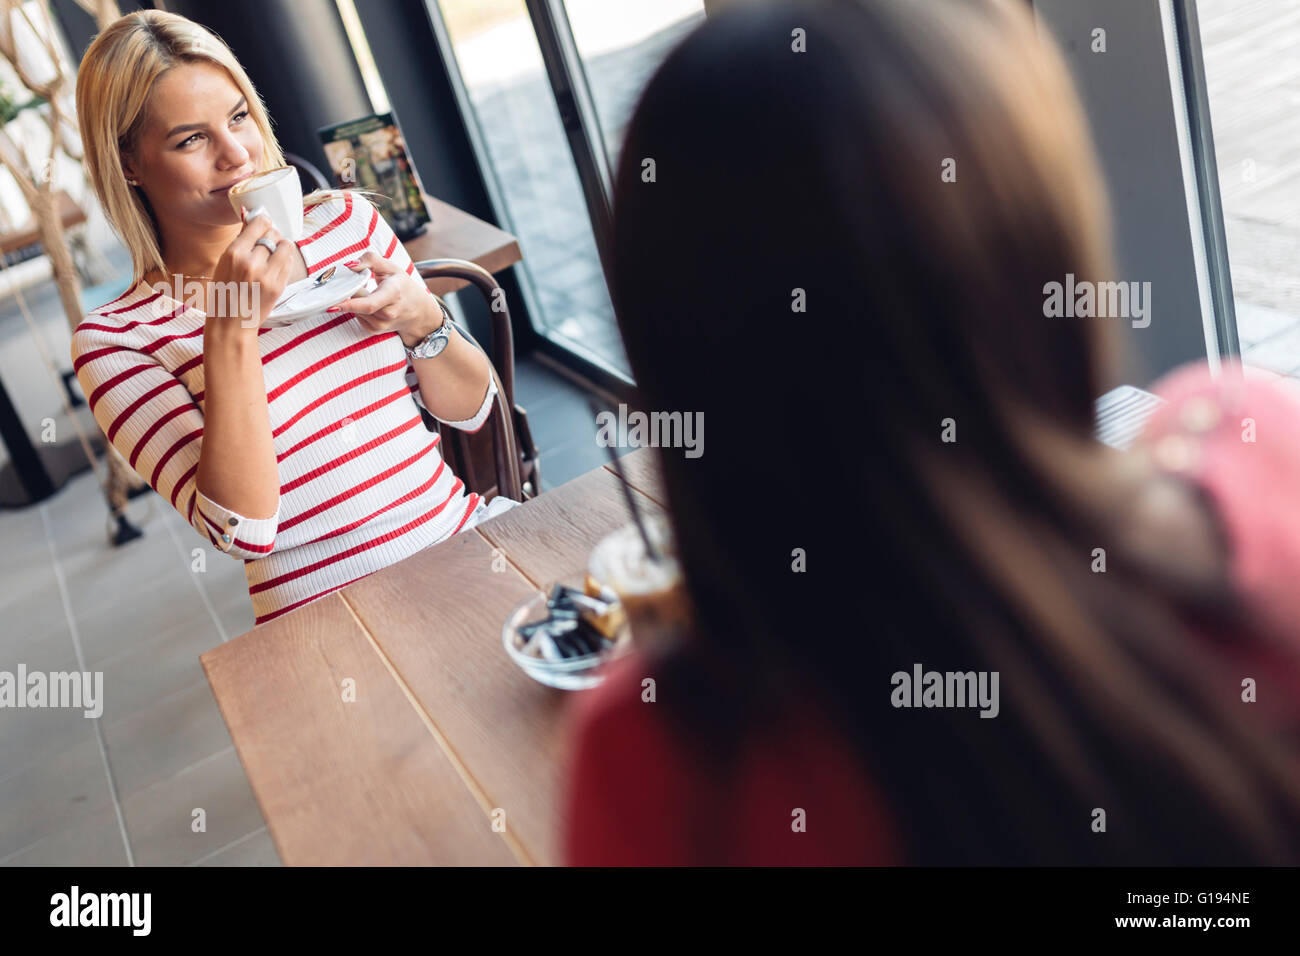 Schöne Frauen, Kaffeetrinken und tratschen in netten restaurant Stockfoto